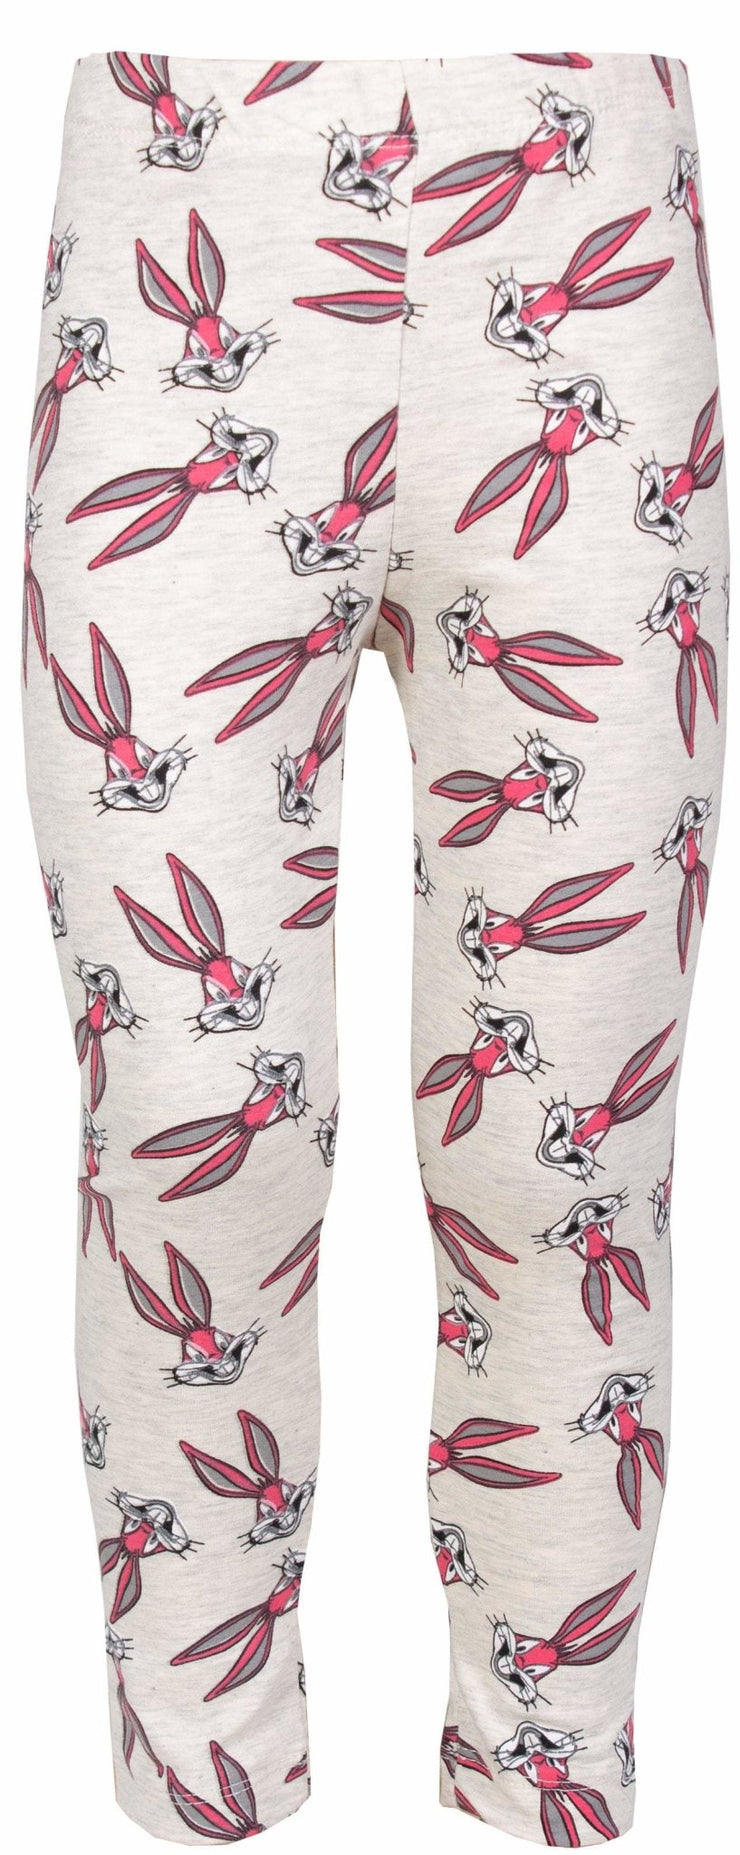 Bunny Leggings for Girls - Elma's Clothing